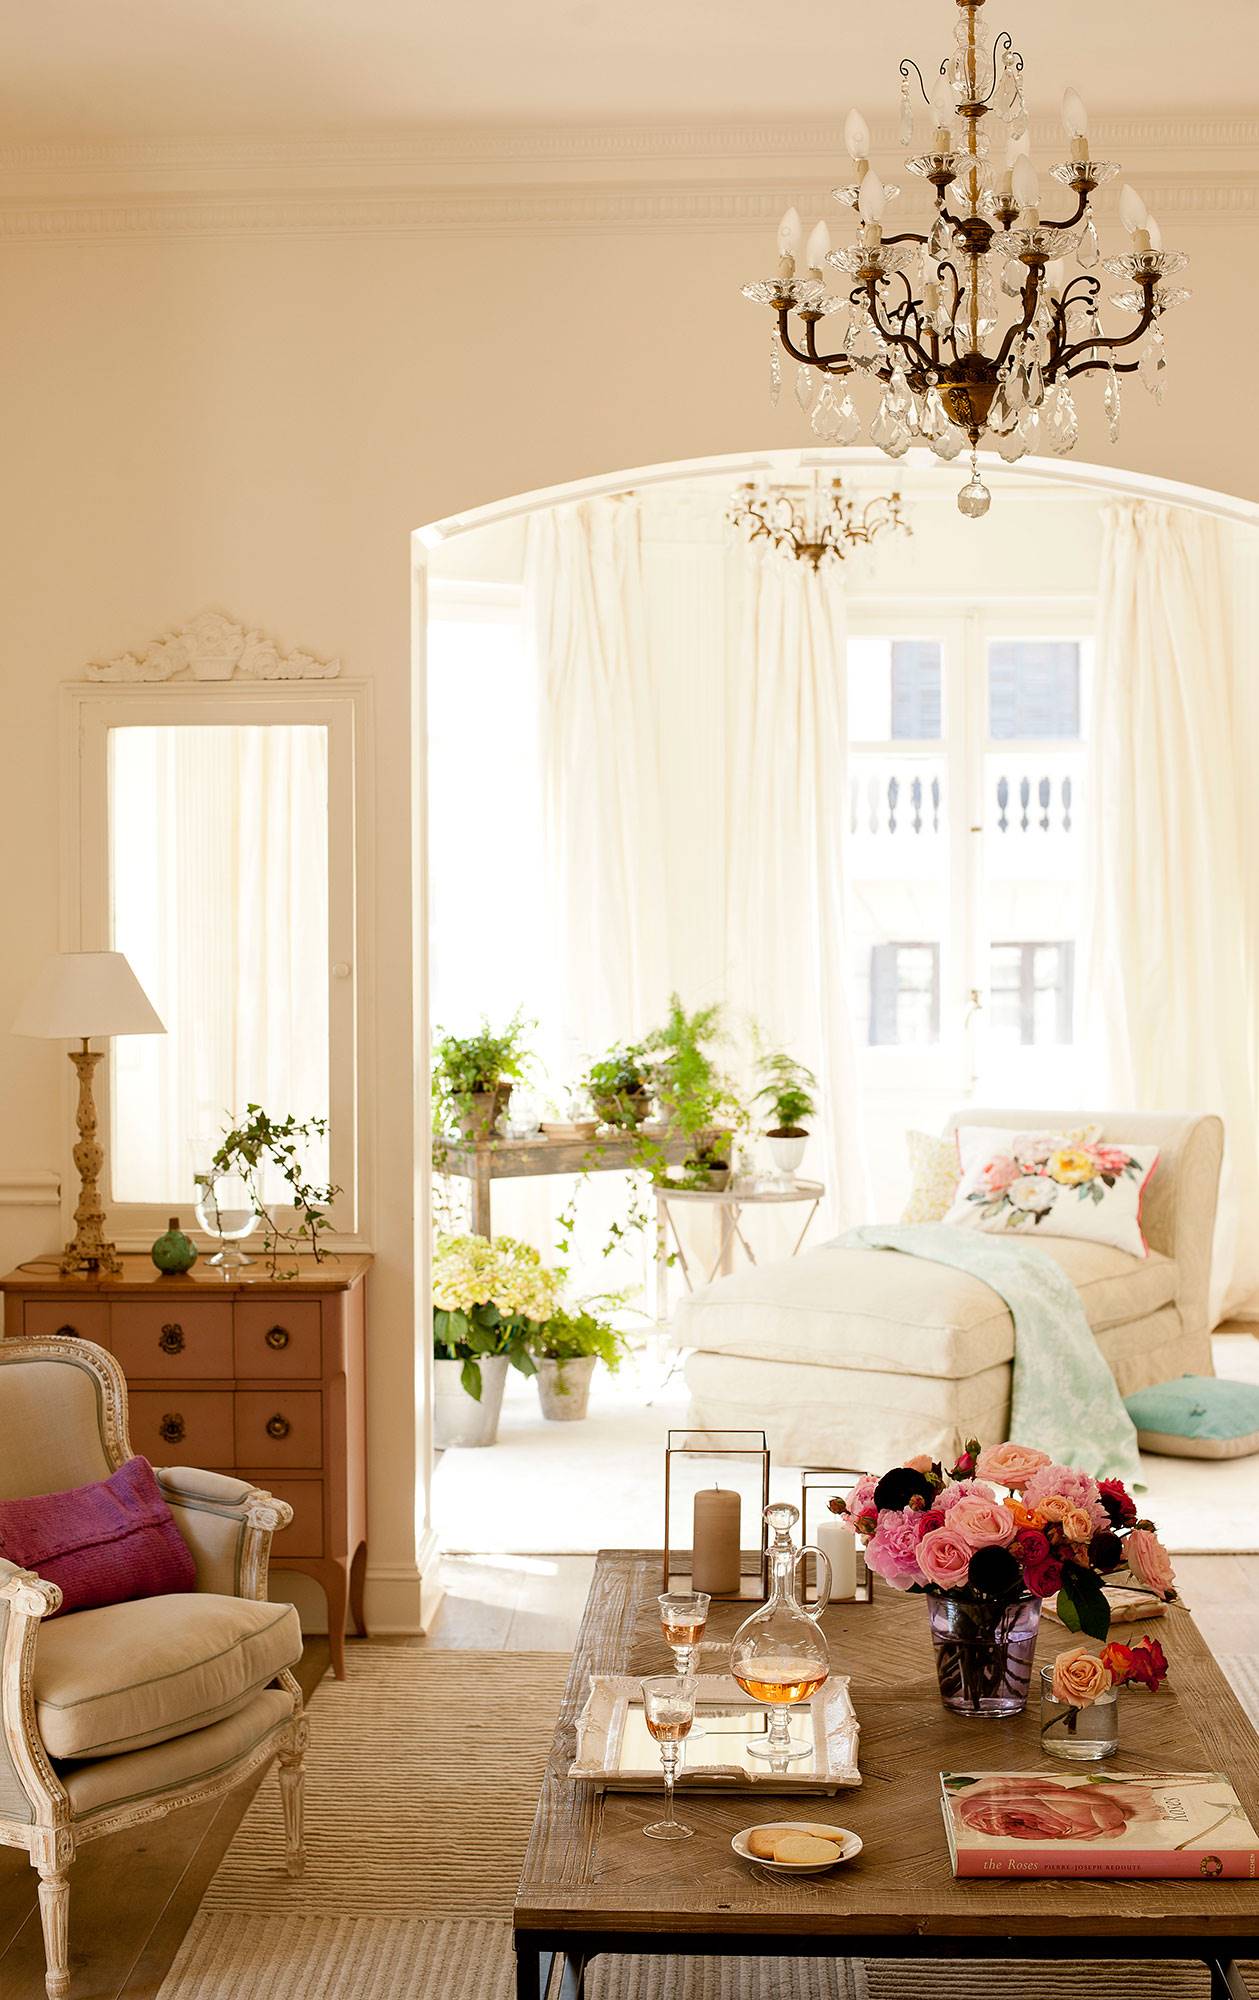 Salón clásico en blanco con chandelier y chaiselongue junto a la ventana